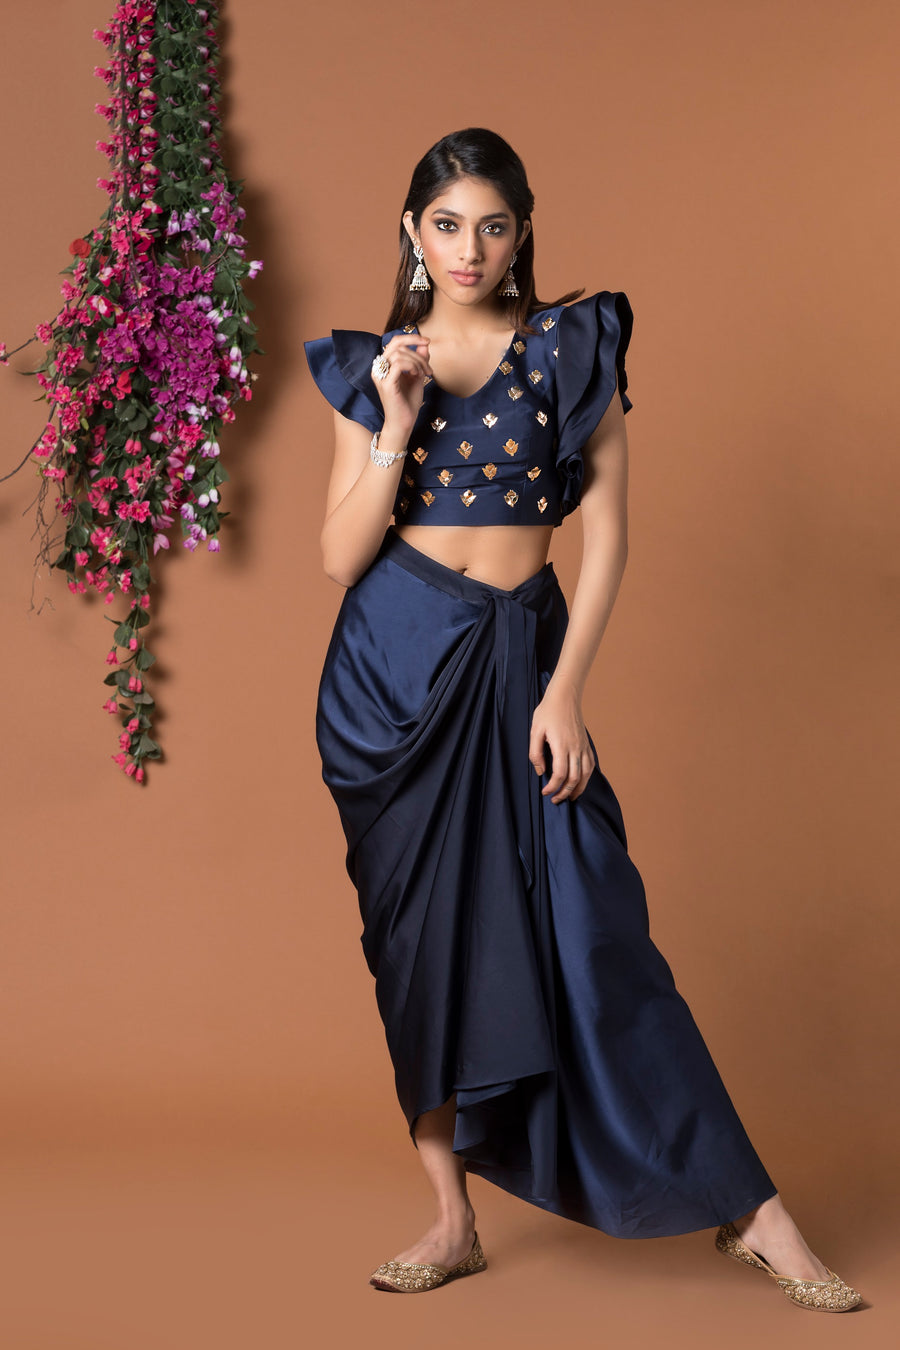 Mehak Murpana| Draped Skirt & Crop Top | Indian Wedding Wear for sangeet & mehndi.